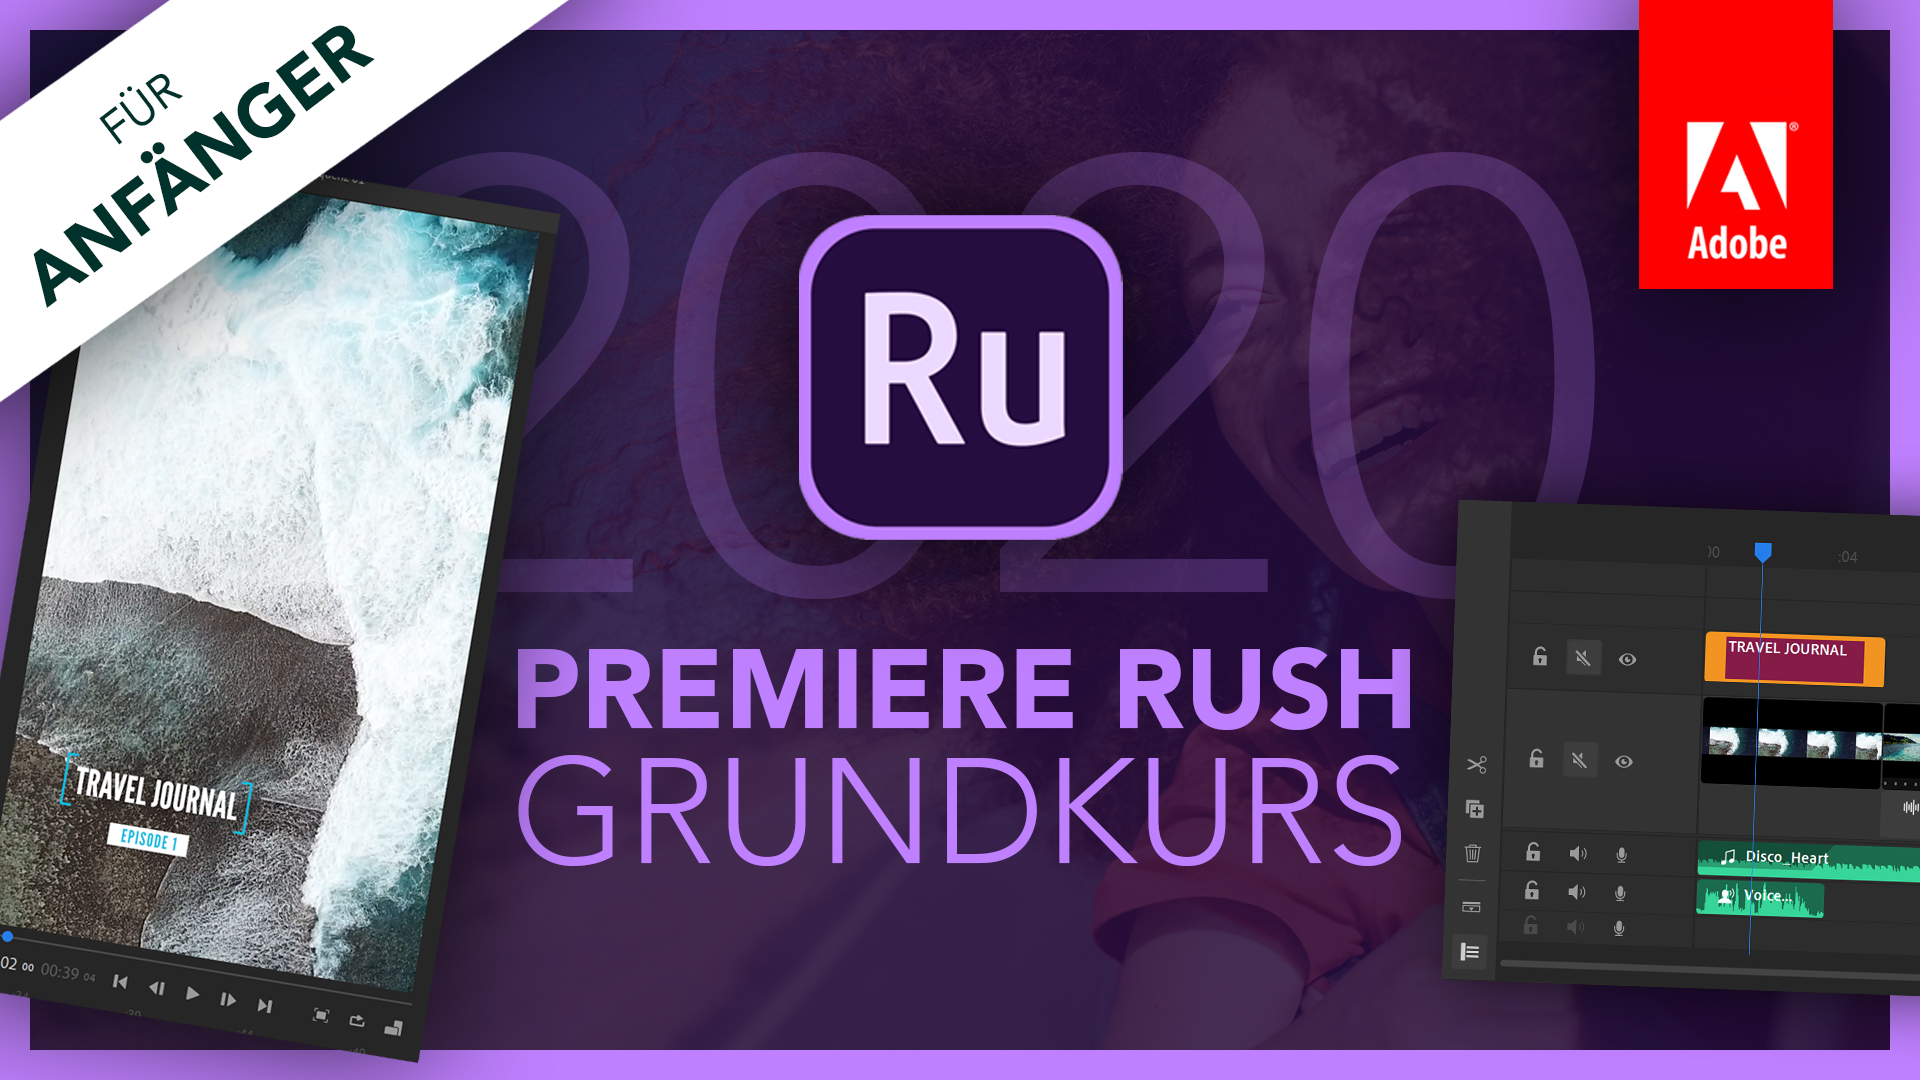 Adobe Premiere Rush 2020 (Grundkurs für Anfänger) Deutsch